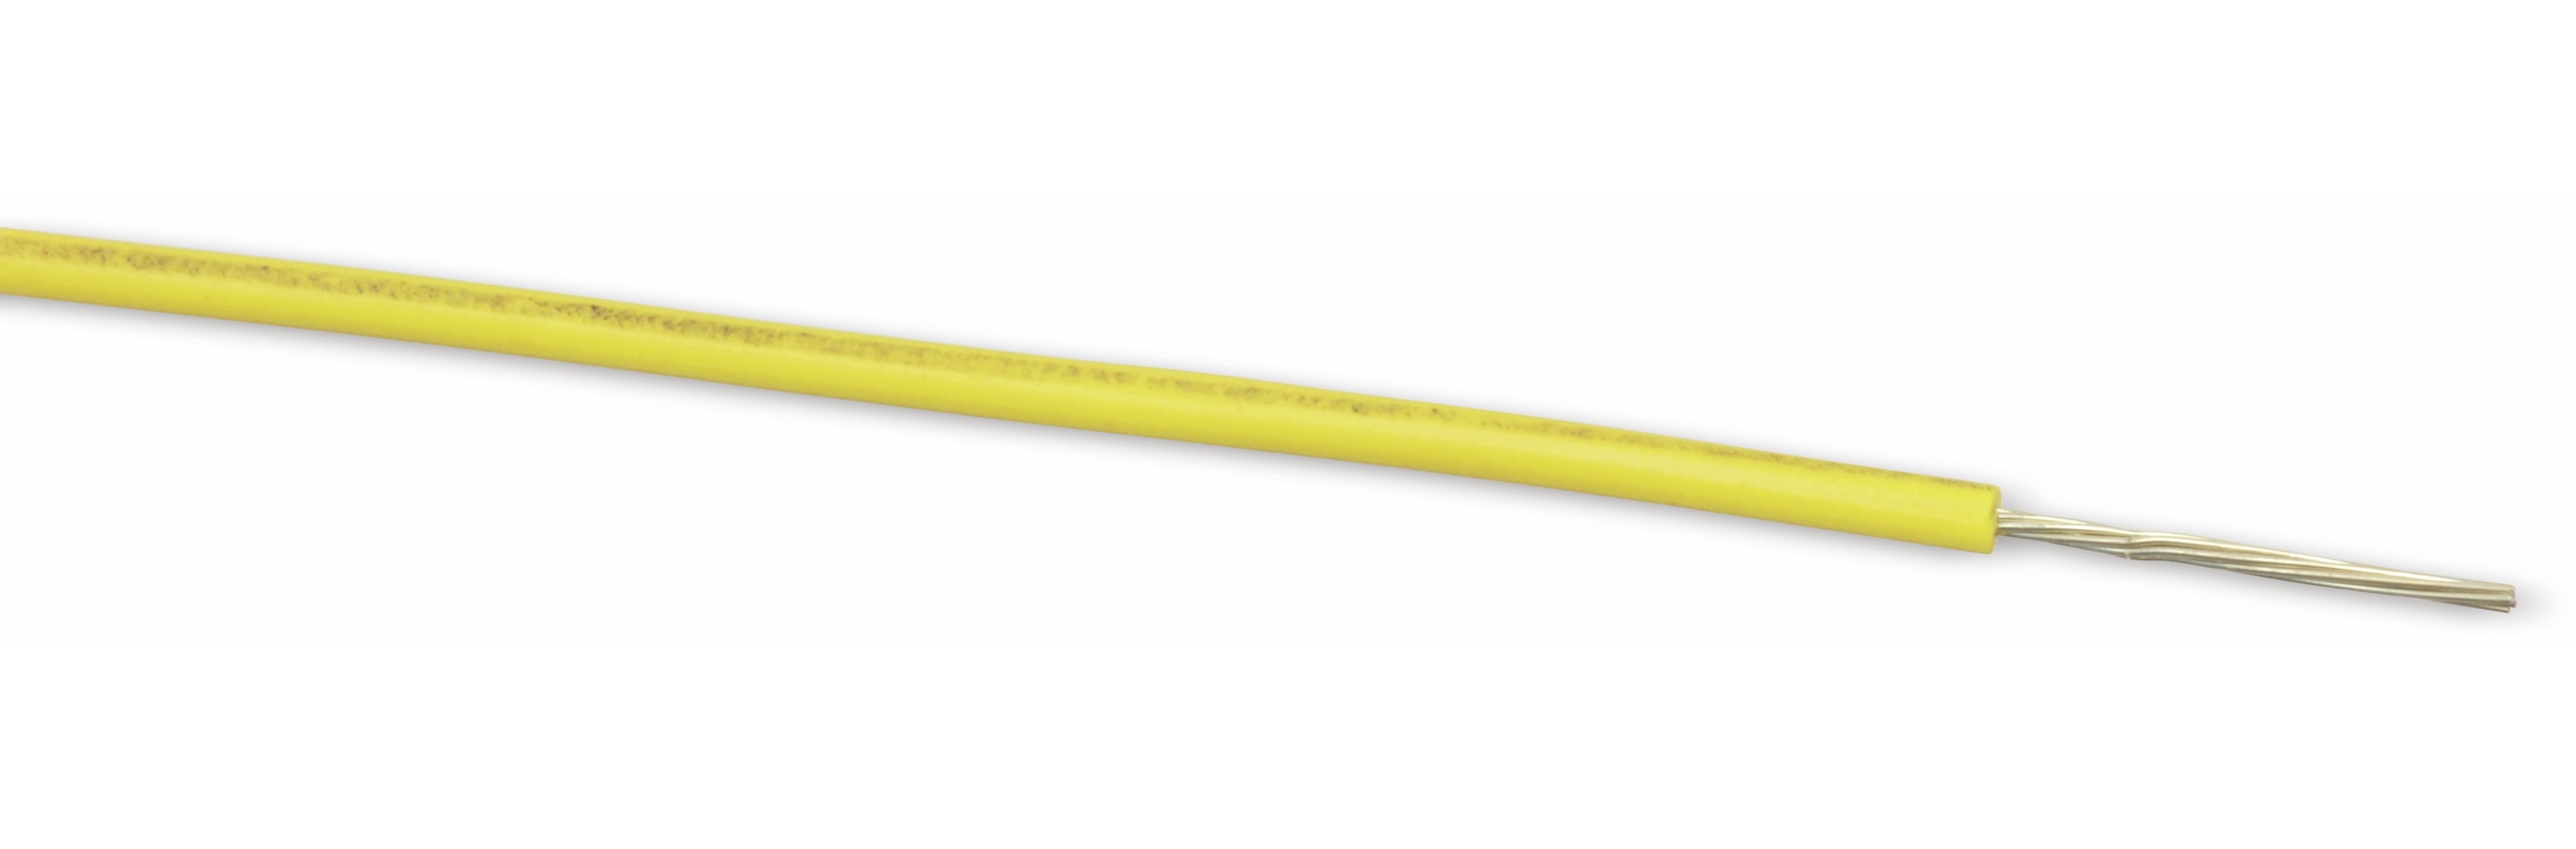 LEONI Schaltlitze LIYW, 1x0,22, gelb, 25 m